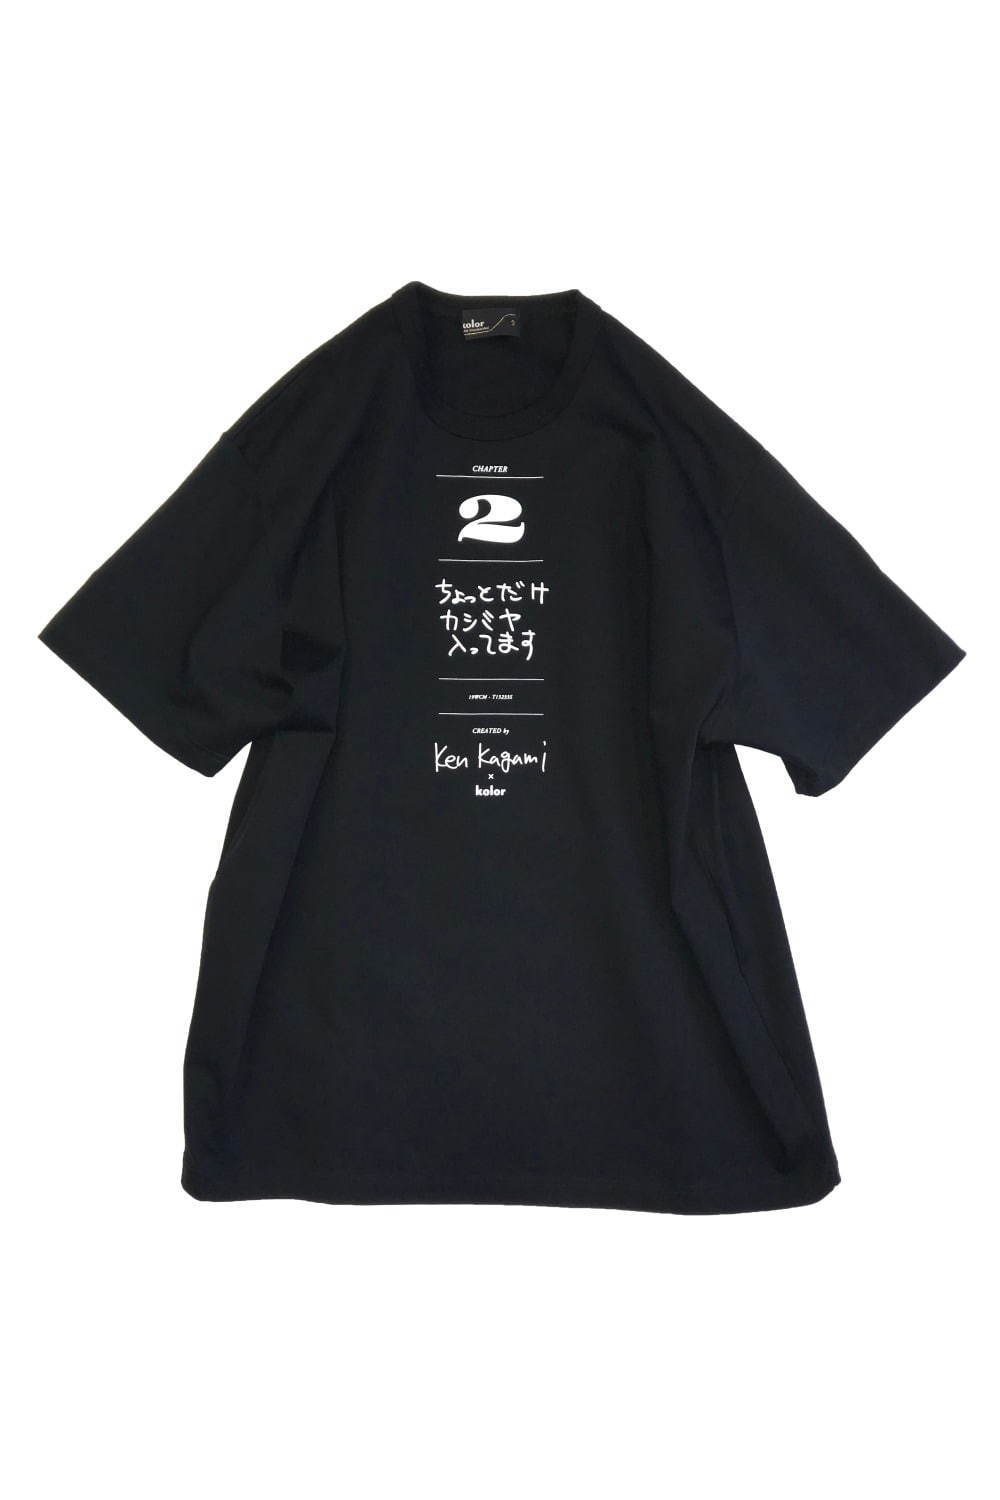 カラー×現代美術作家 加賀美健のコラボTシャツ、ファッション関連の3つのメッセージ入り｜写真7